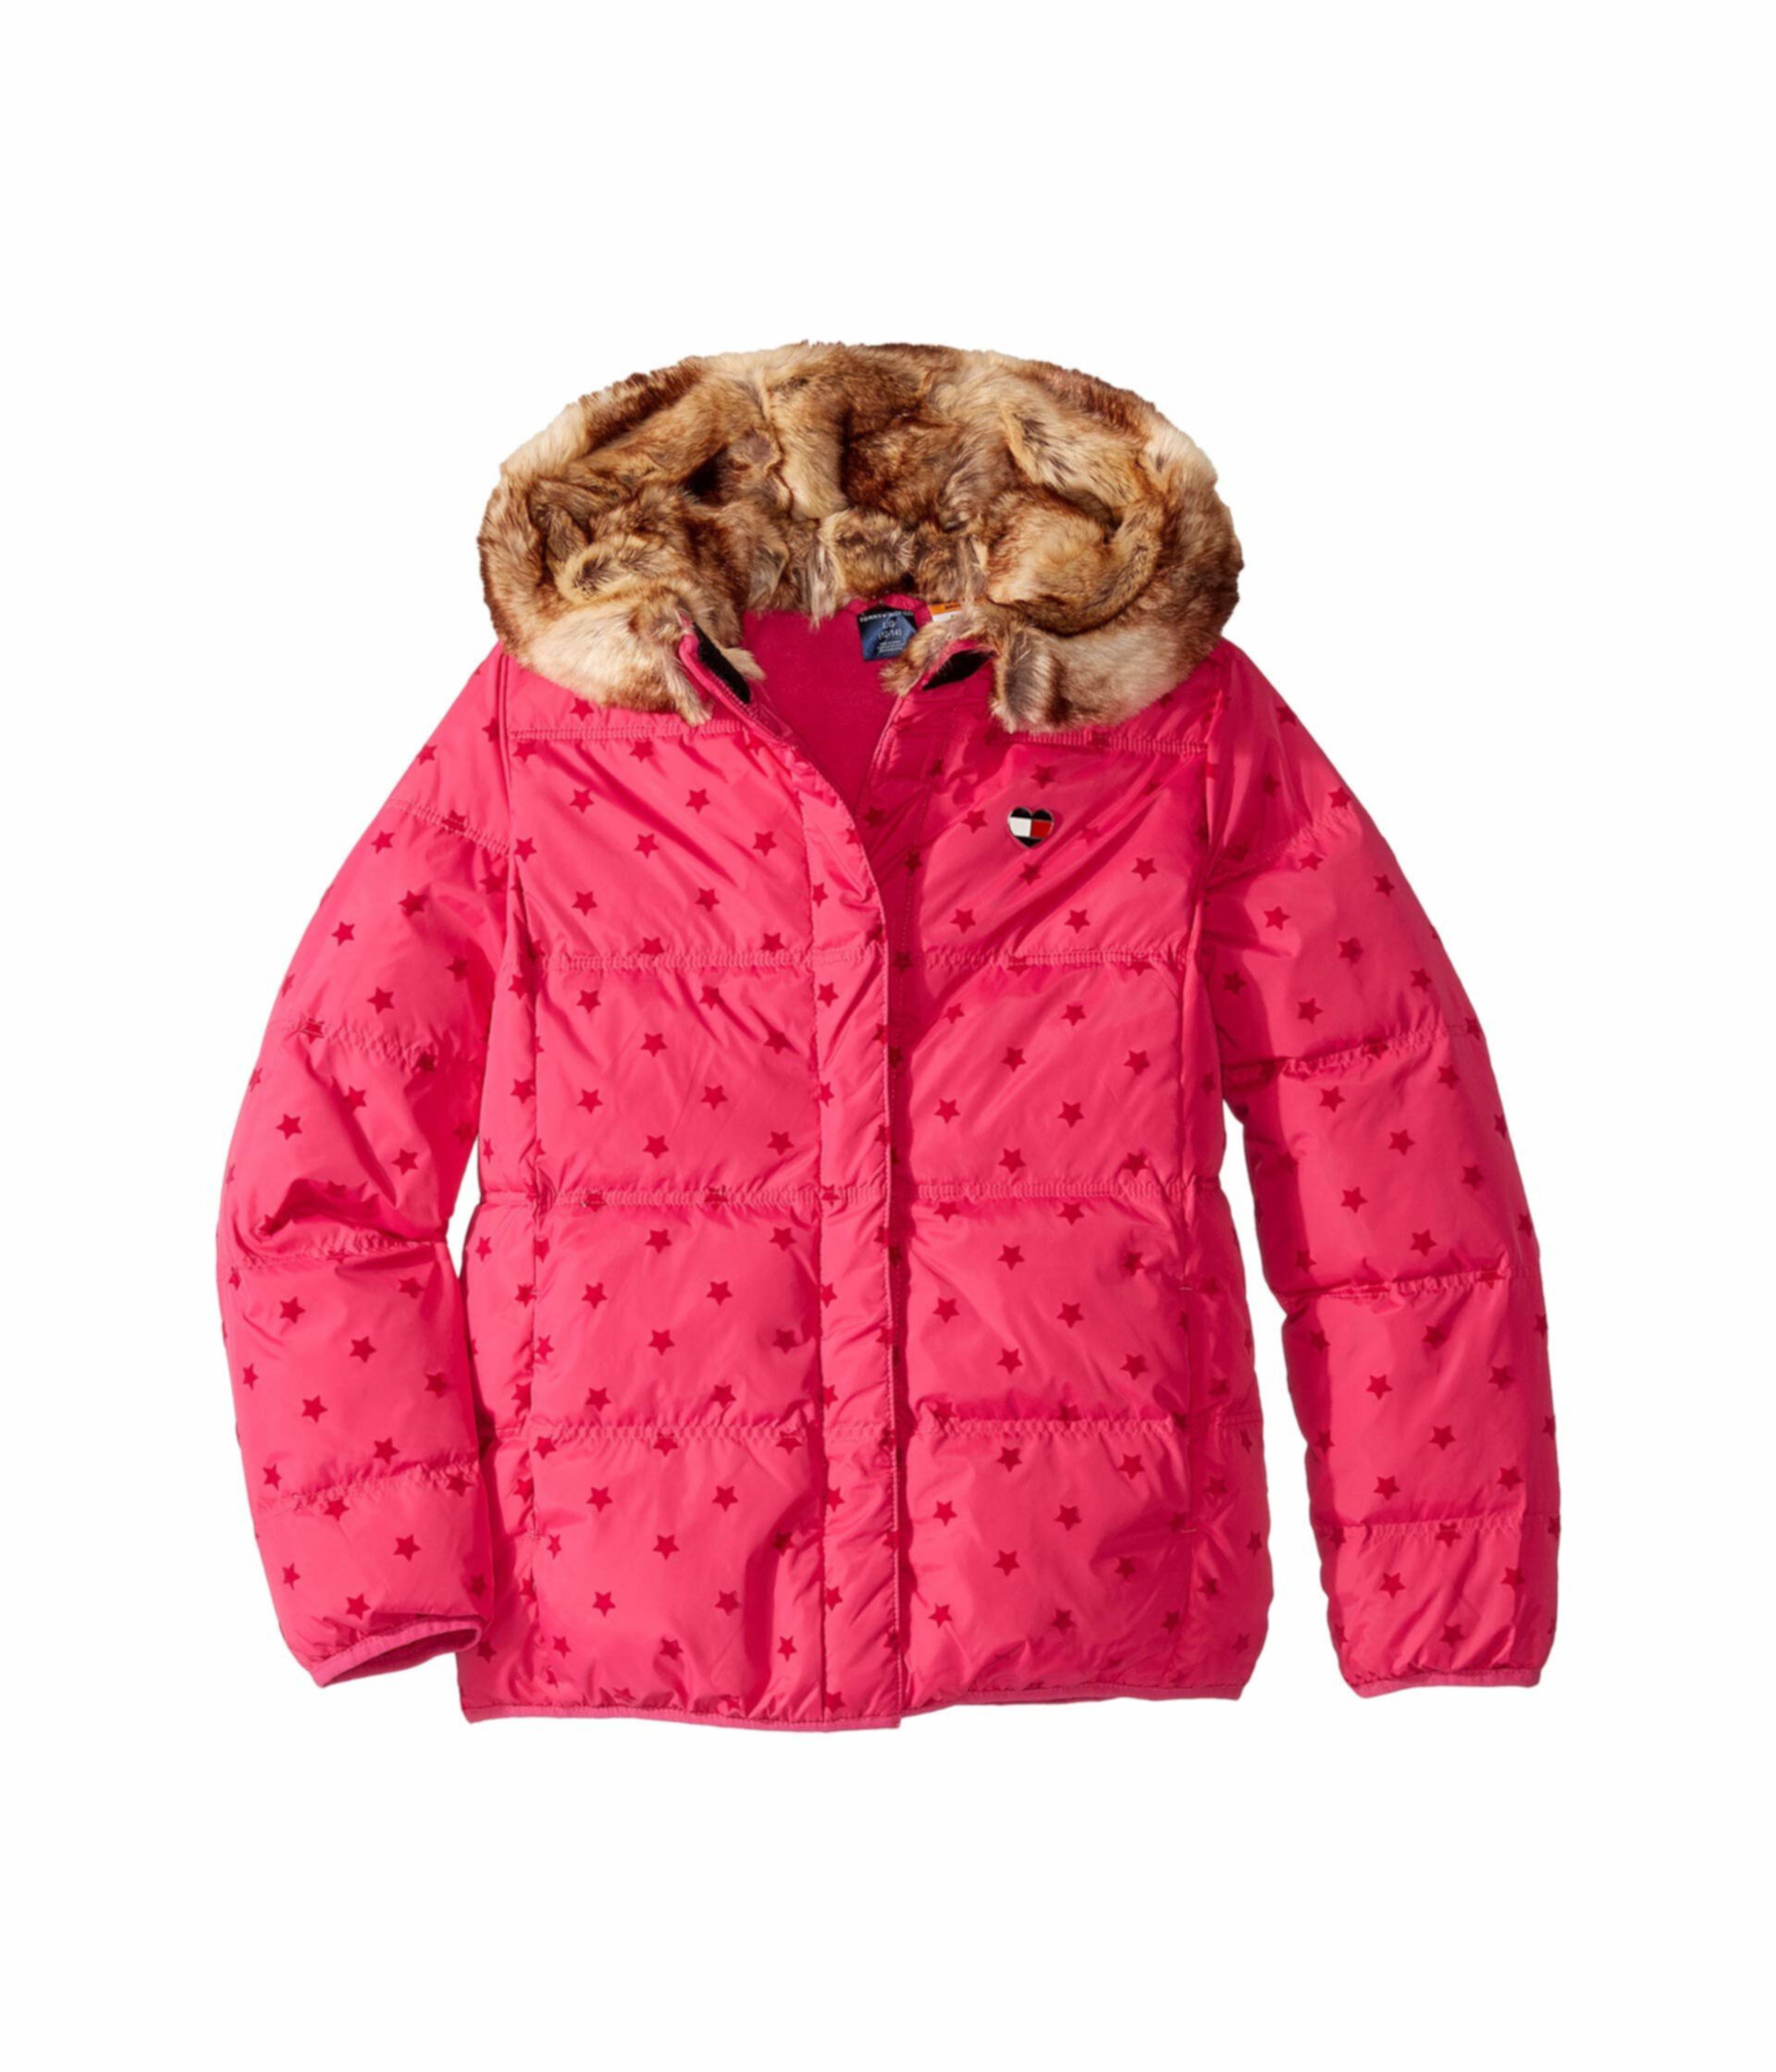 Куртка-пуховик с магнитными пуговицами (для детей младшего и школьного возраста) Tommy Hilfiger Adaptive